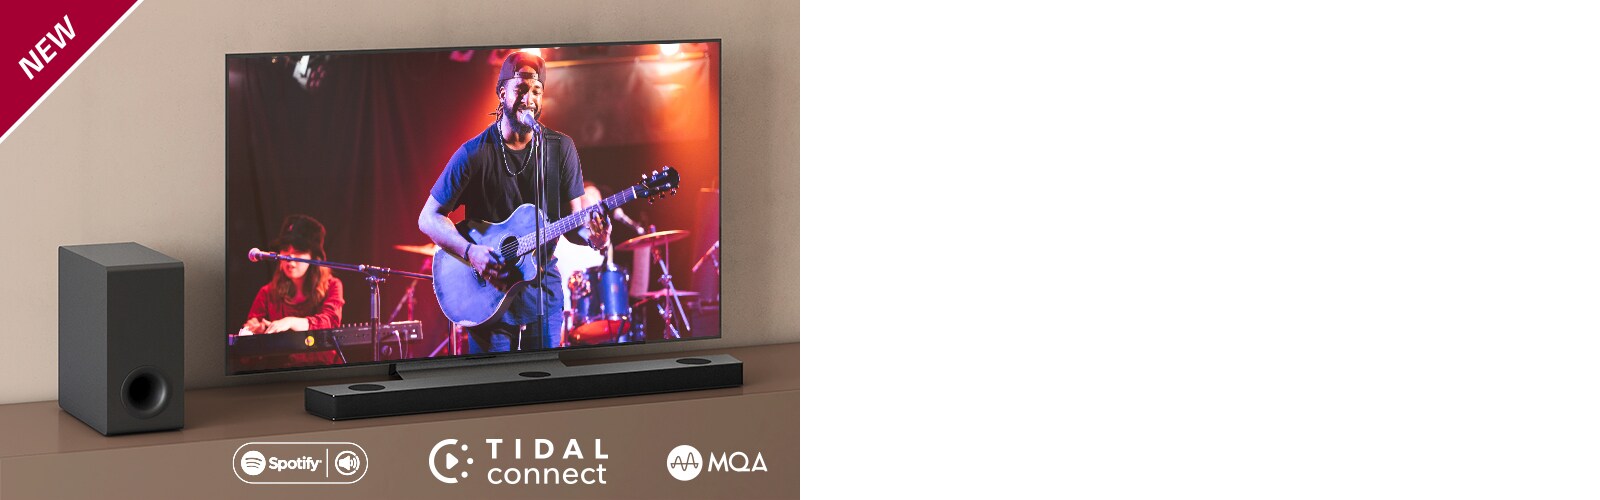 LG TV on asetettu ruskealle hyllylle, ja LG Sound Bar S95QR on asetettu TV:n eteen. Subwoofer on asetettu TV:n vasemmalle puolelle. Televisiossa näkyy konserttinäkymä. UUSI-merkki näkyy vasemmassa yläkulmassa.